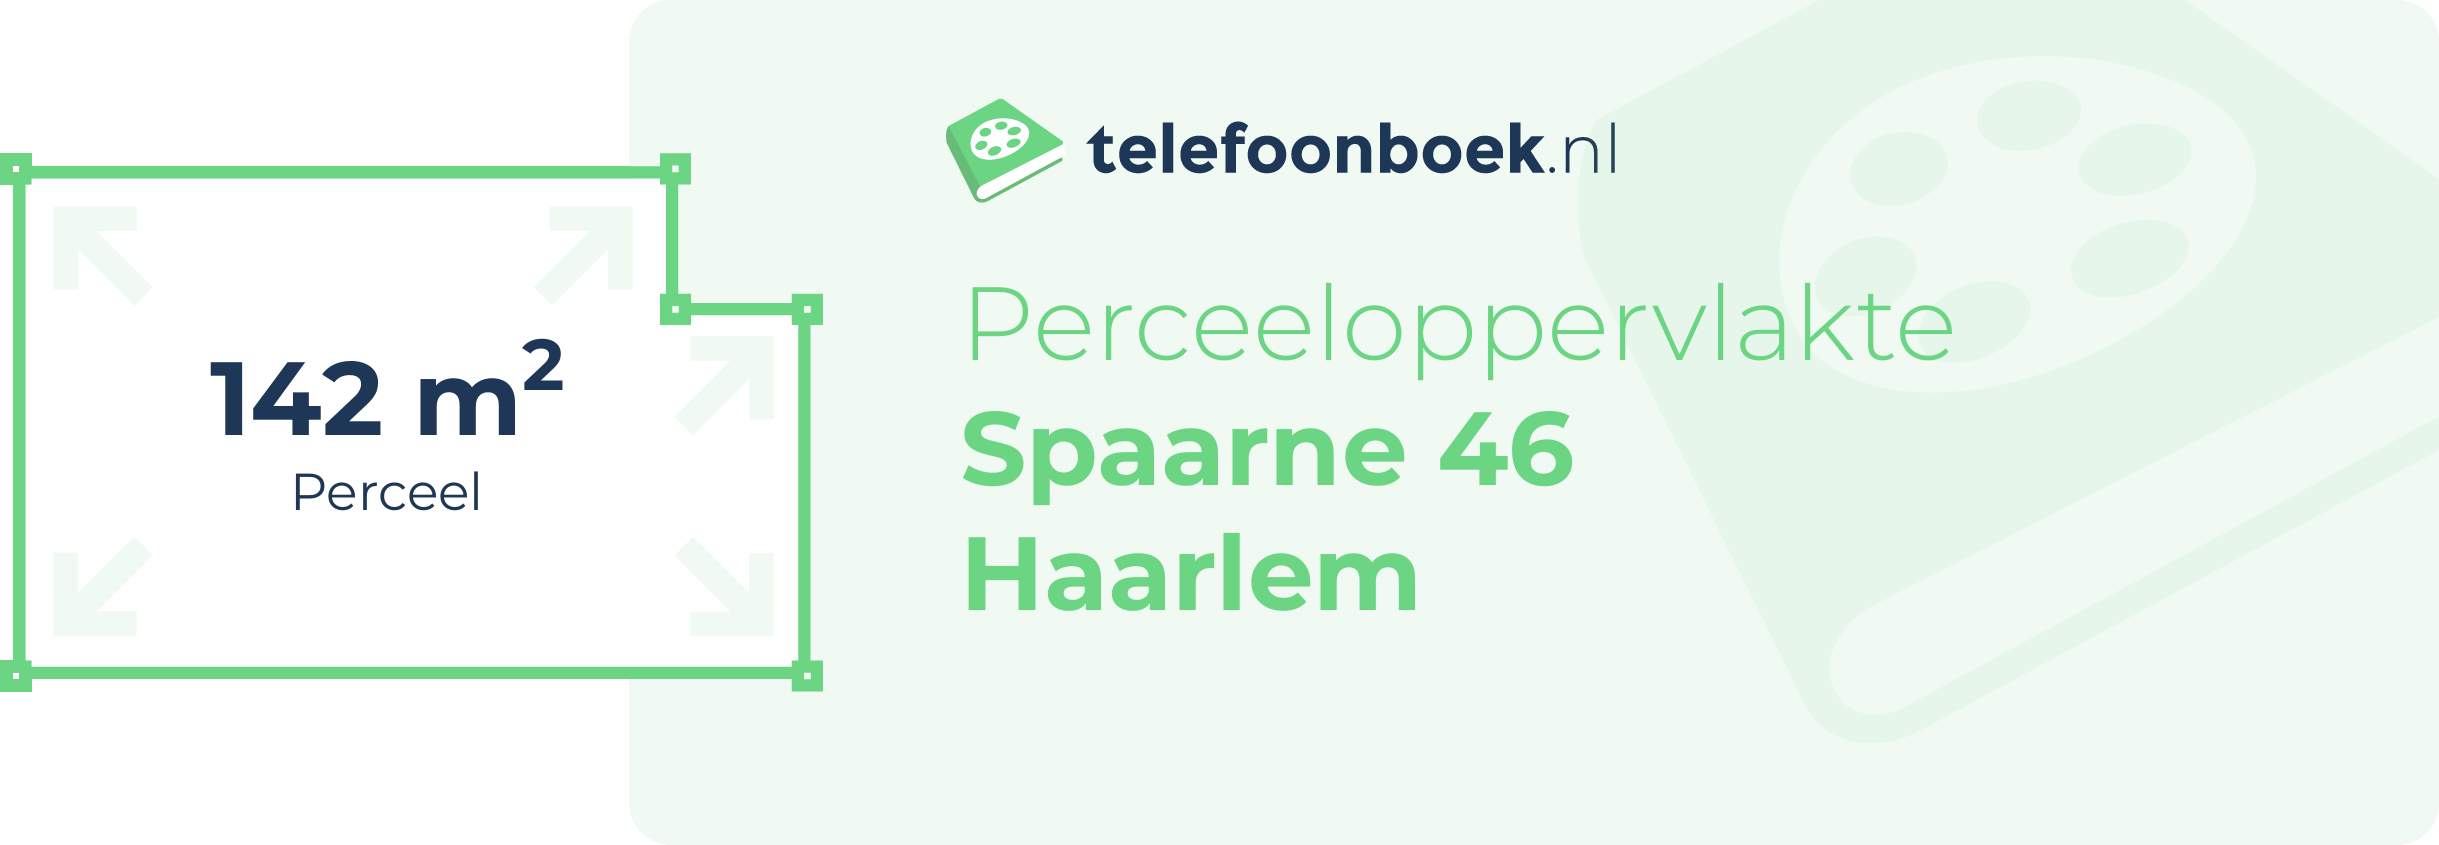 Perceeloppervlakte Spaarne 46 Haarlem